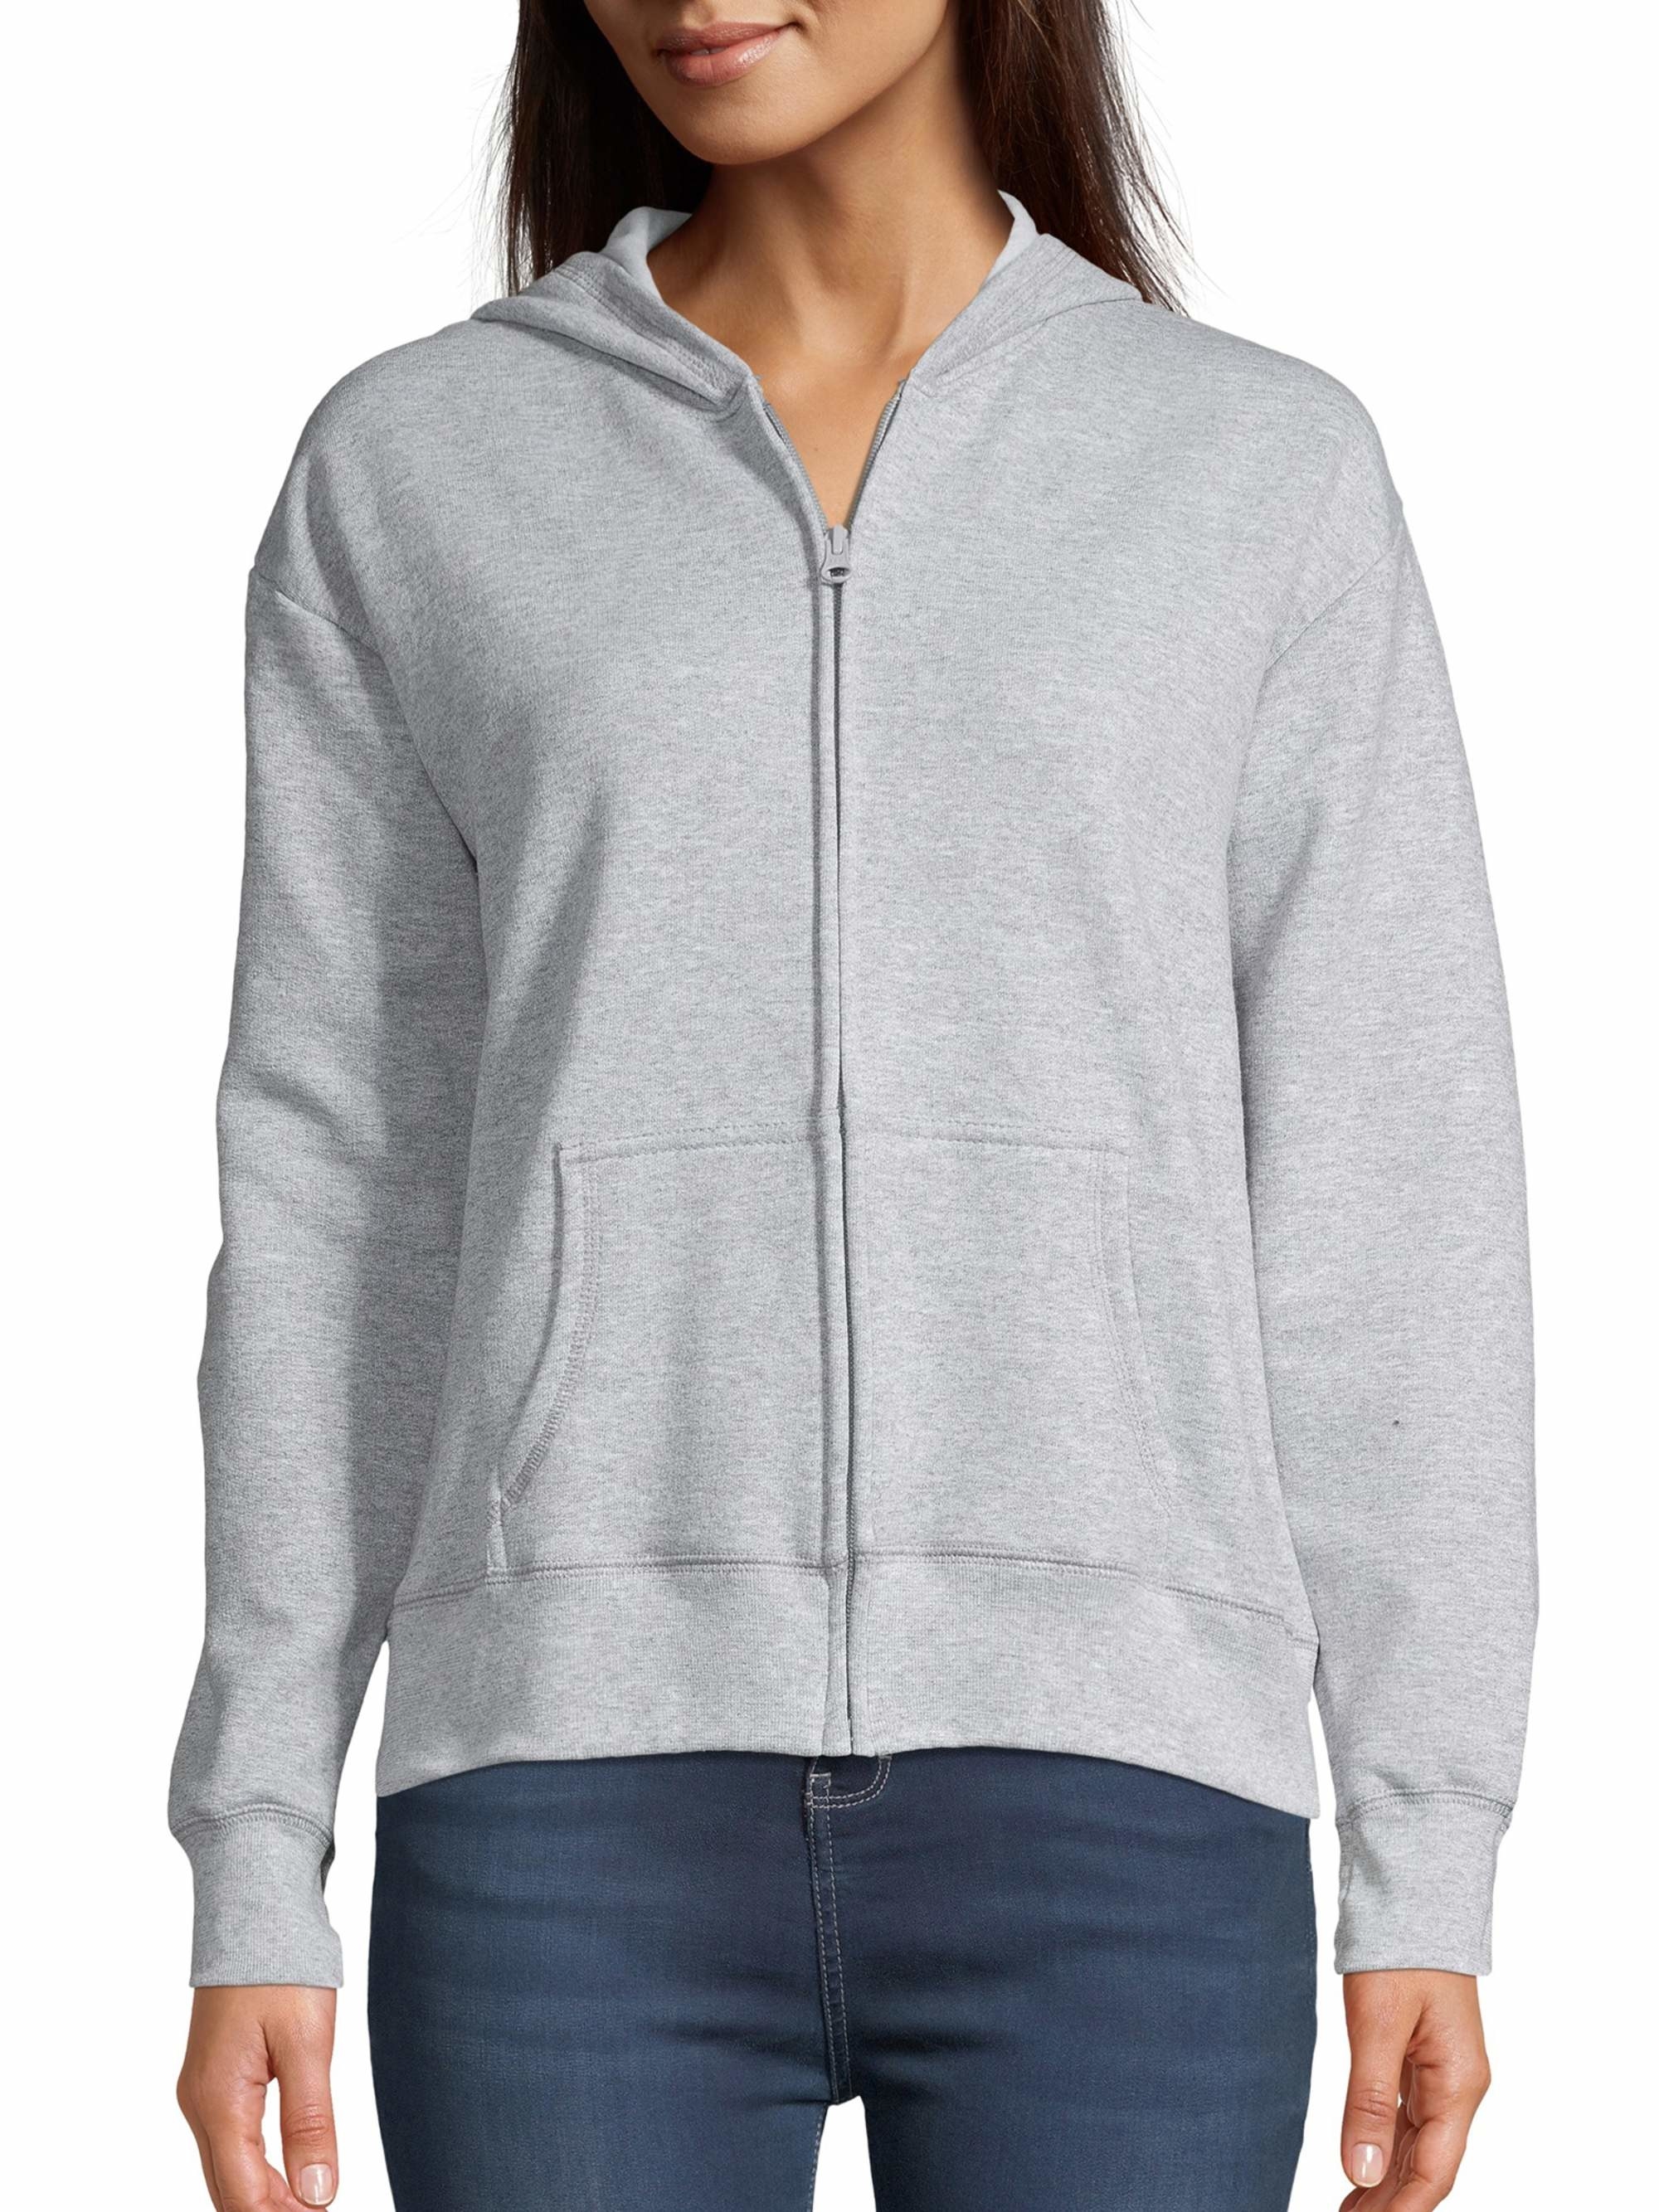 The grey zip-up hoodie